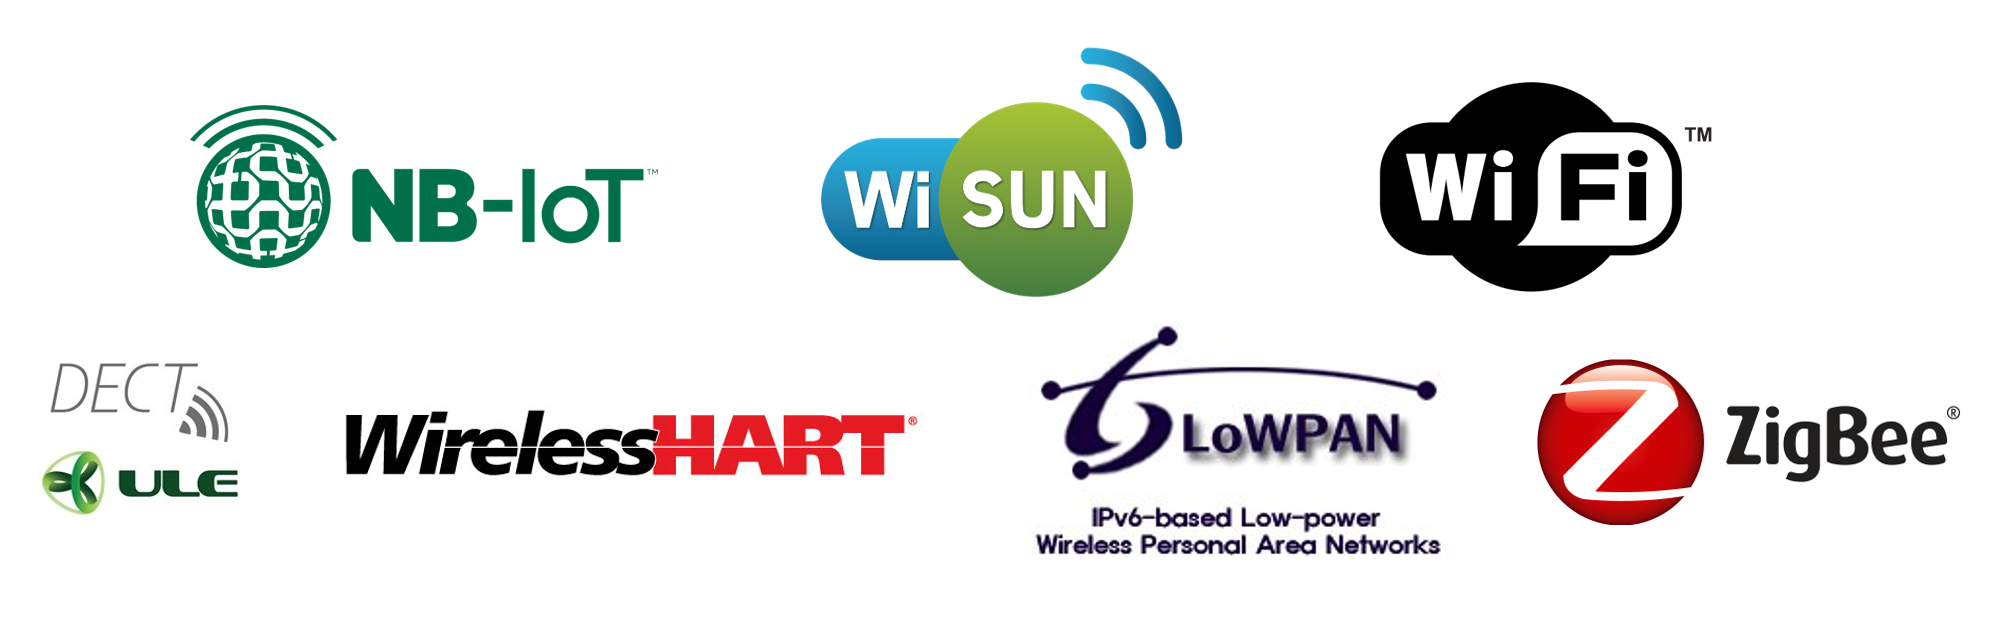 Logos NB-IoT, WiSUN, WiFi, DECT ULE, WirelessHART, 6LoWPAN, ZigBee